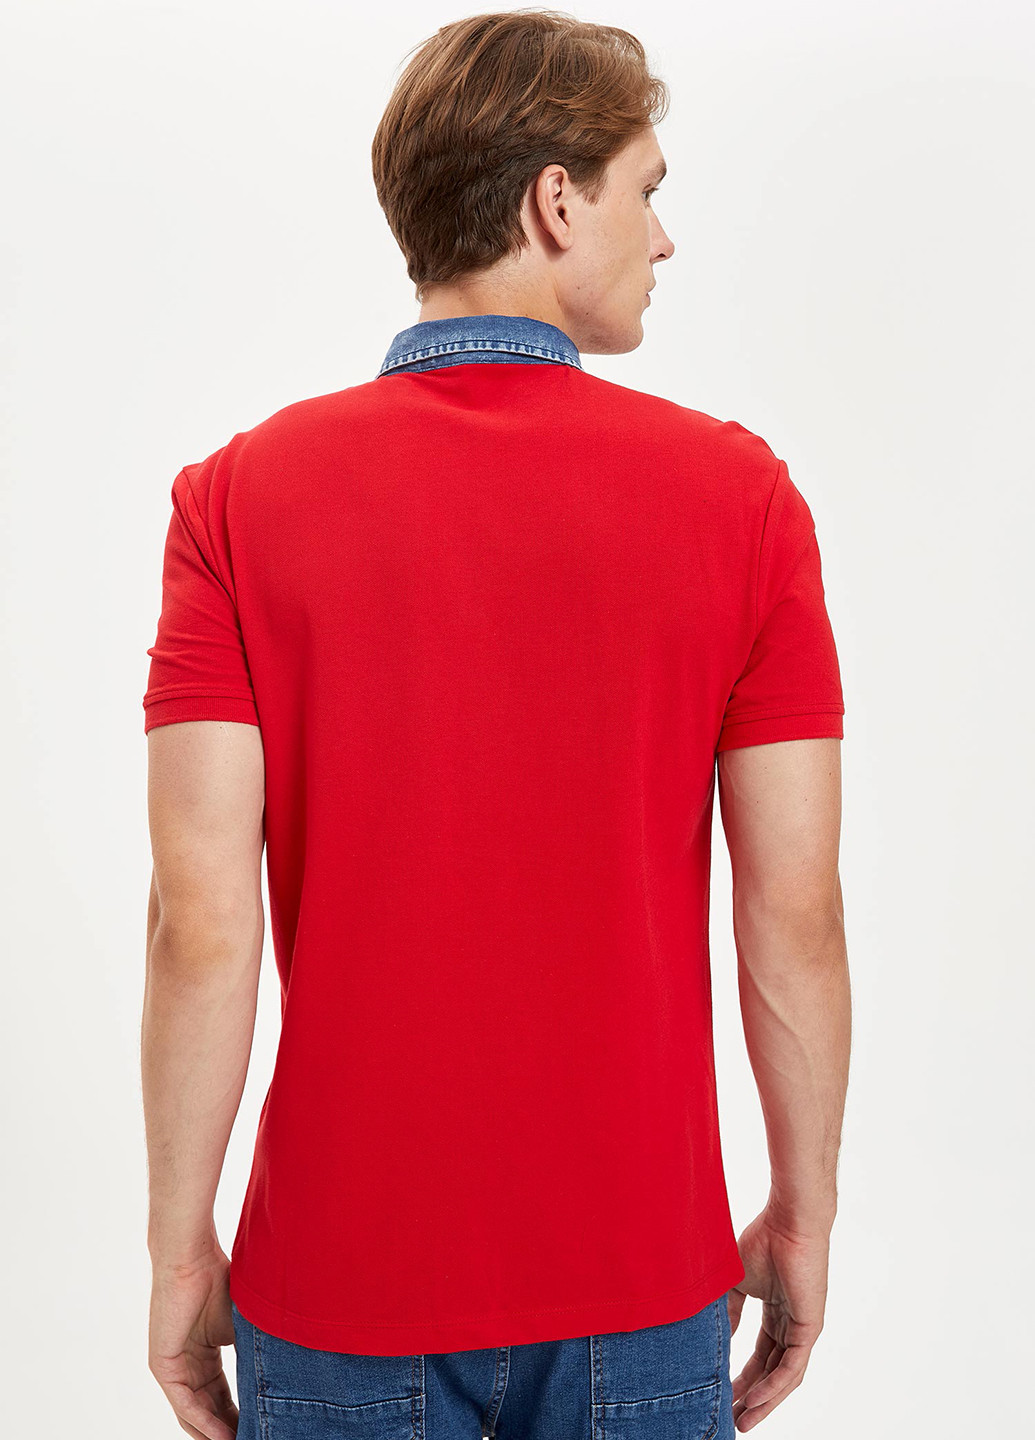 Красная футболка-поло для мужчин DeFacto однотонная